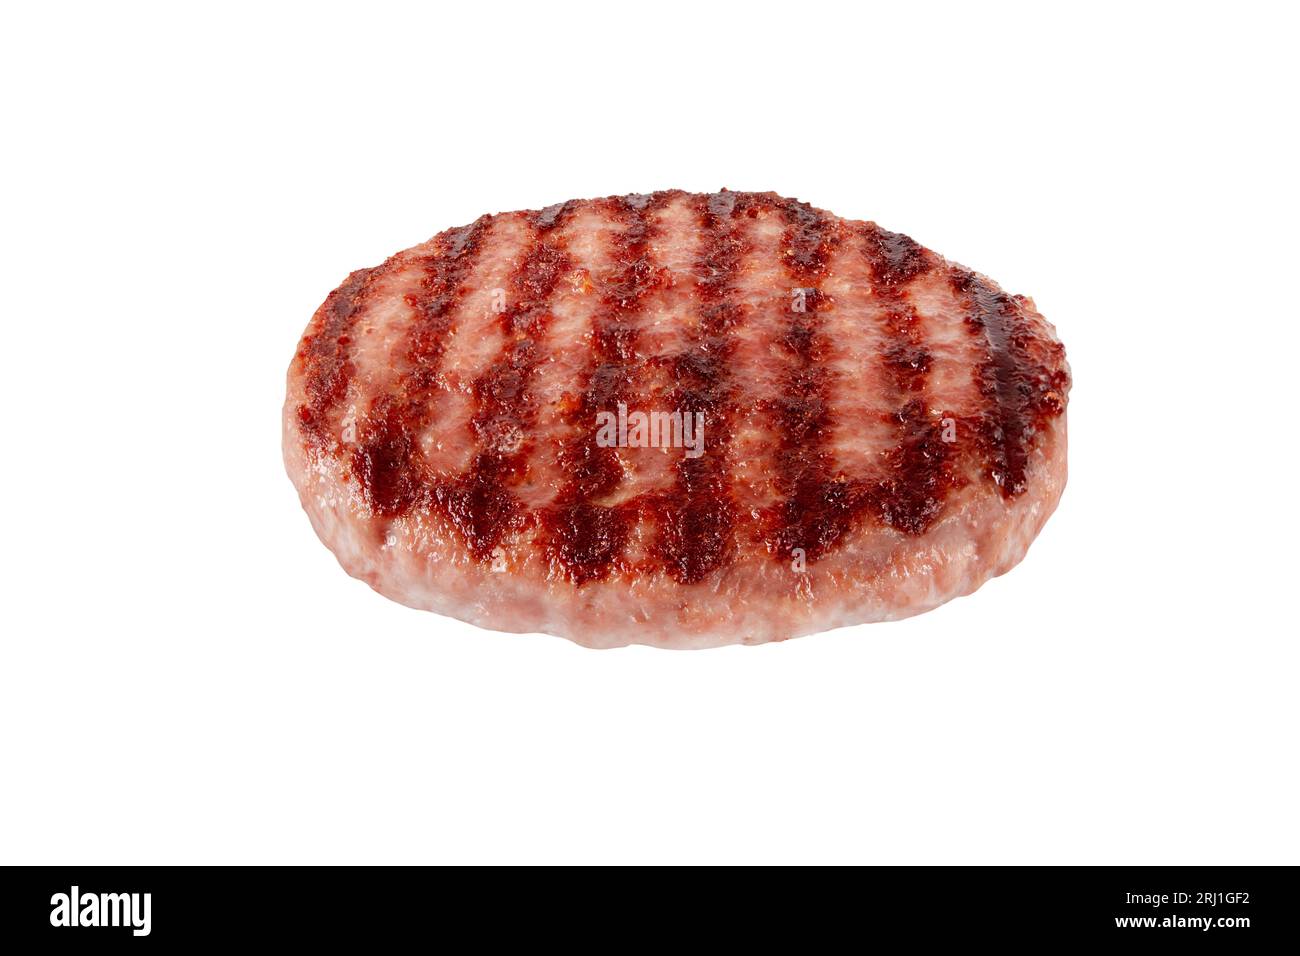 Patty de viande de bœuf hachée ou hamburger avec des marques de gril noircies isolées sur blanc. Ingrédient pour hamburger. Banque D'Images